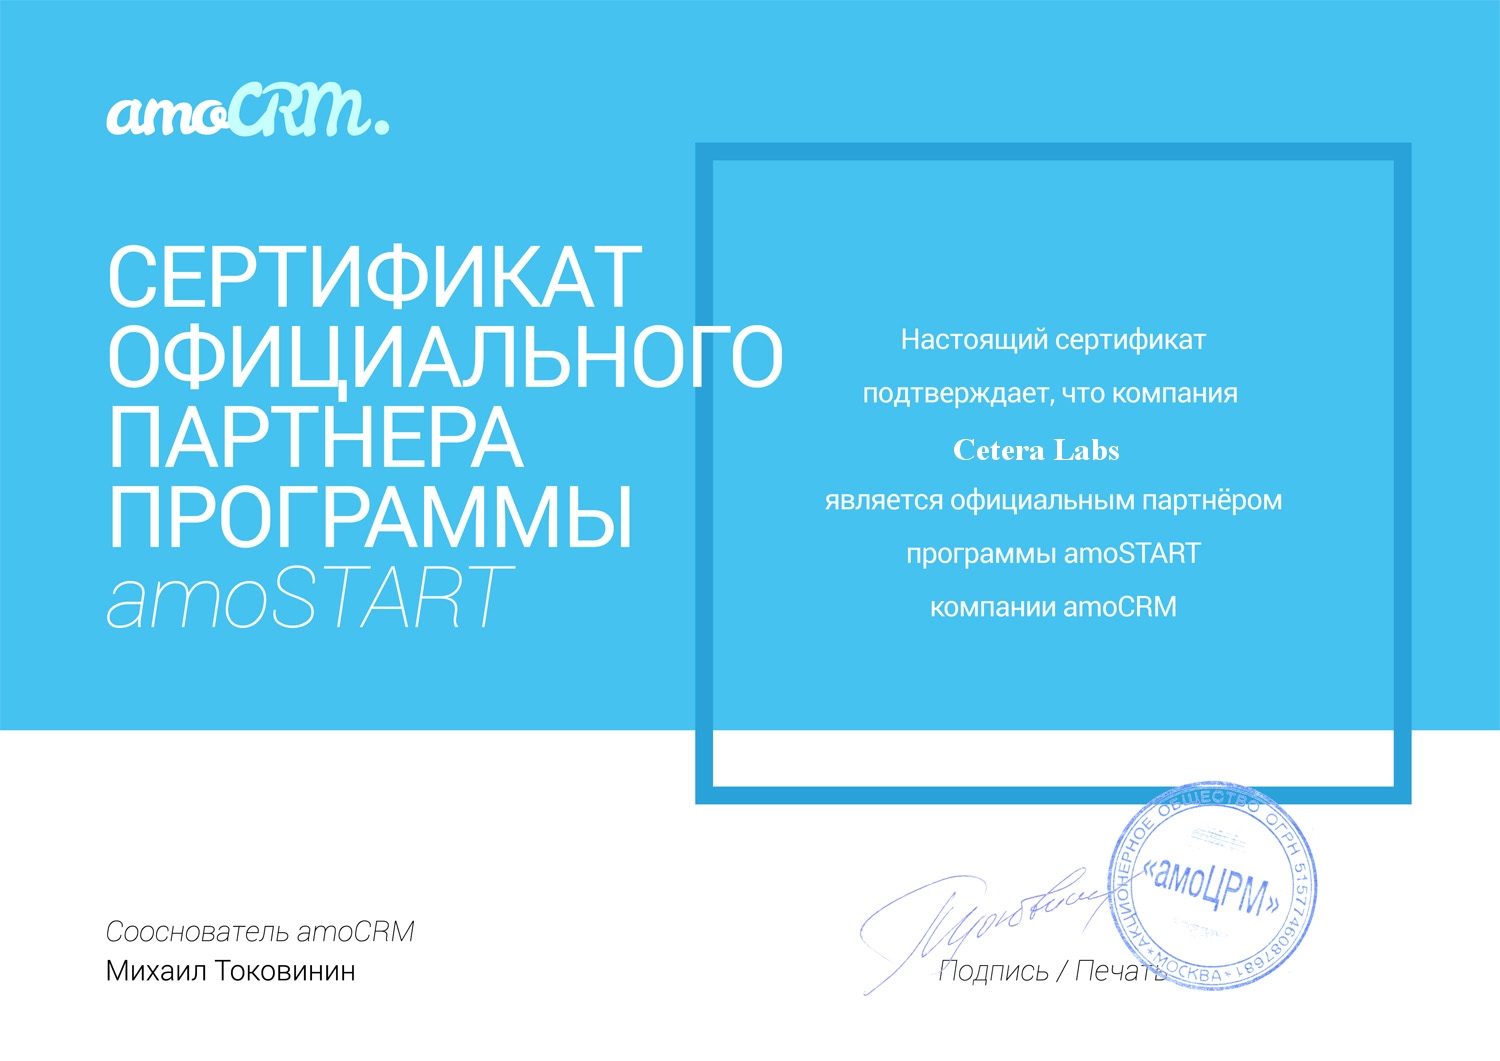 Сертификат партнера AmoCRM